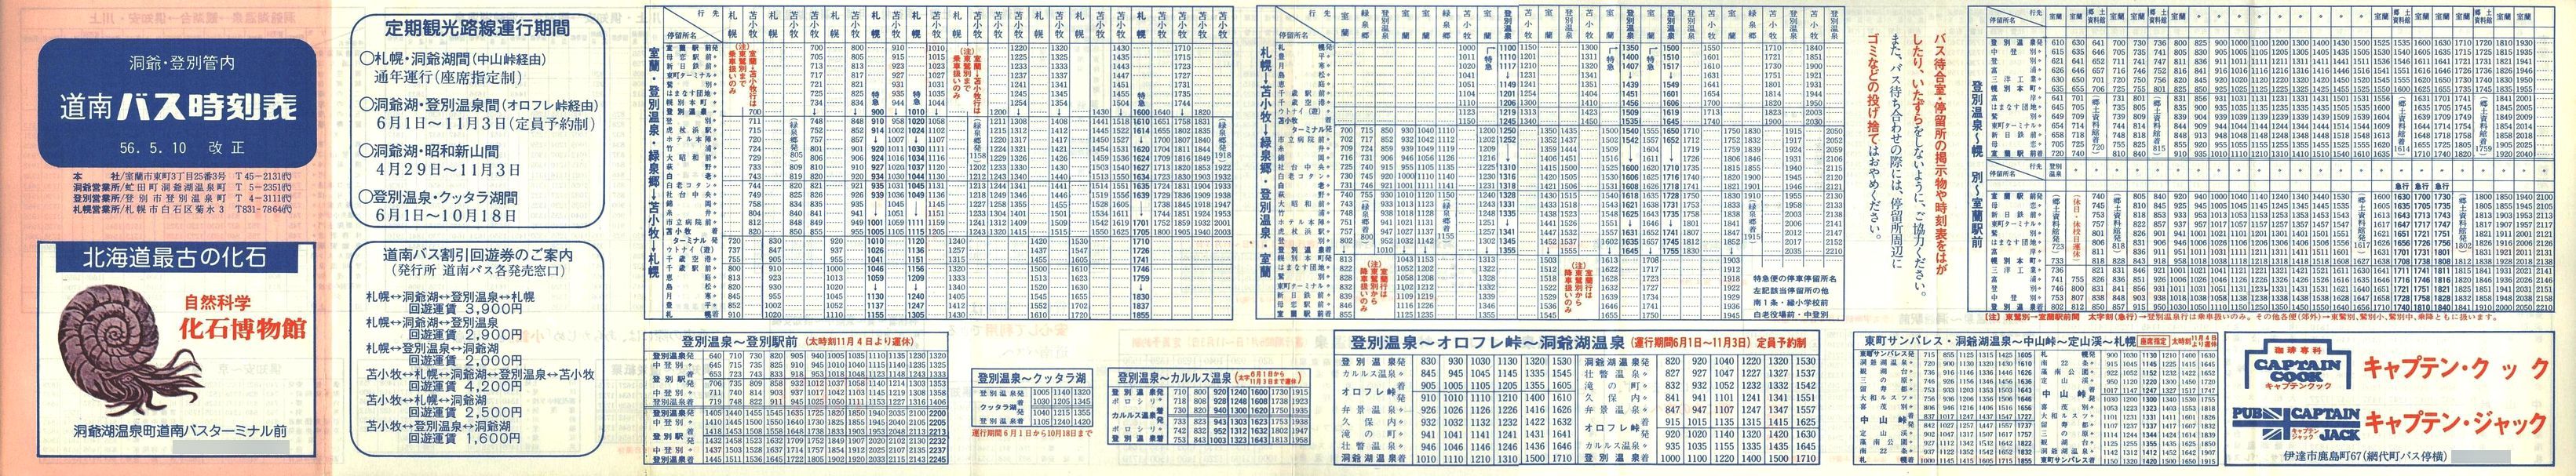 1981-05-10改正_道南バス_洞爺・登別管内時刻表表面